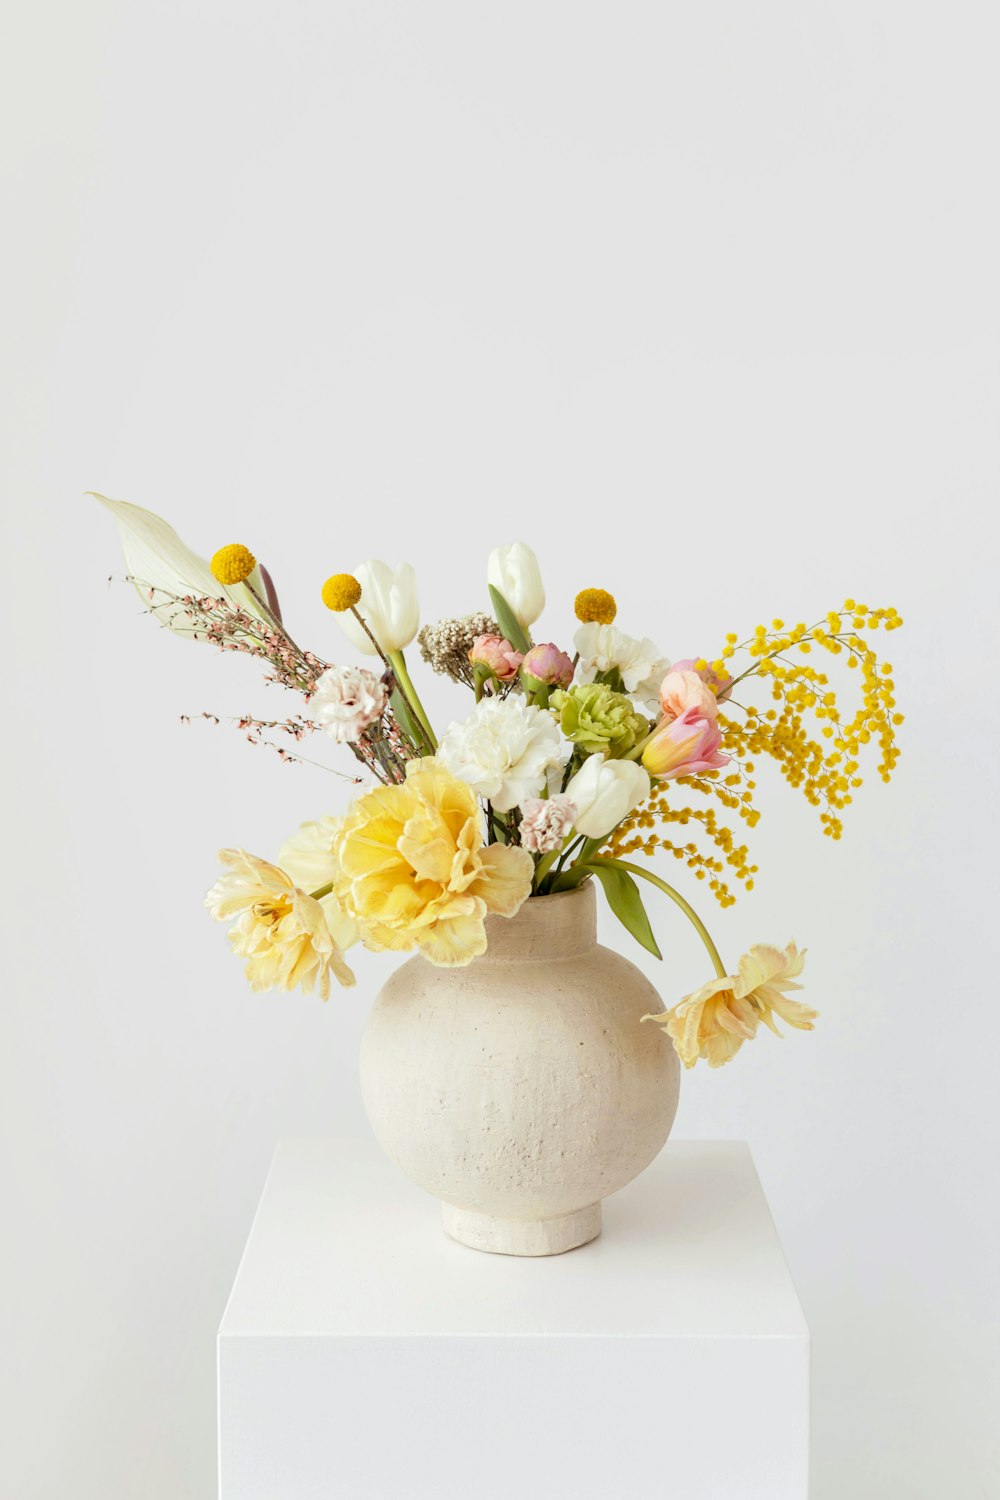 黄色と白の花が入った白い花瓶